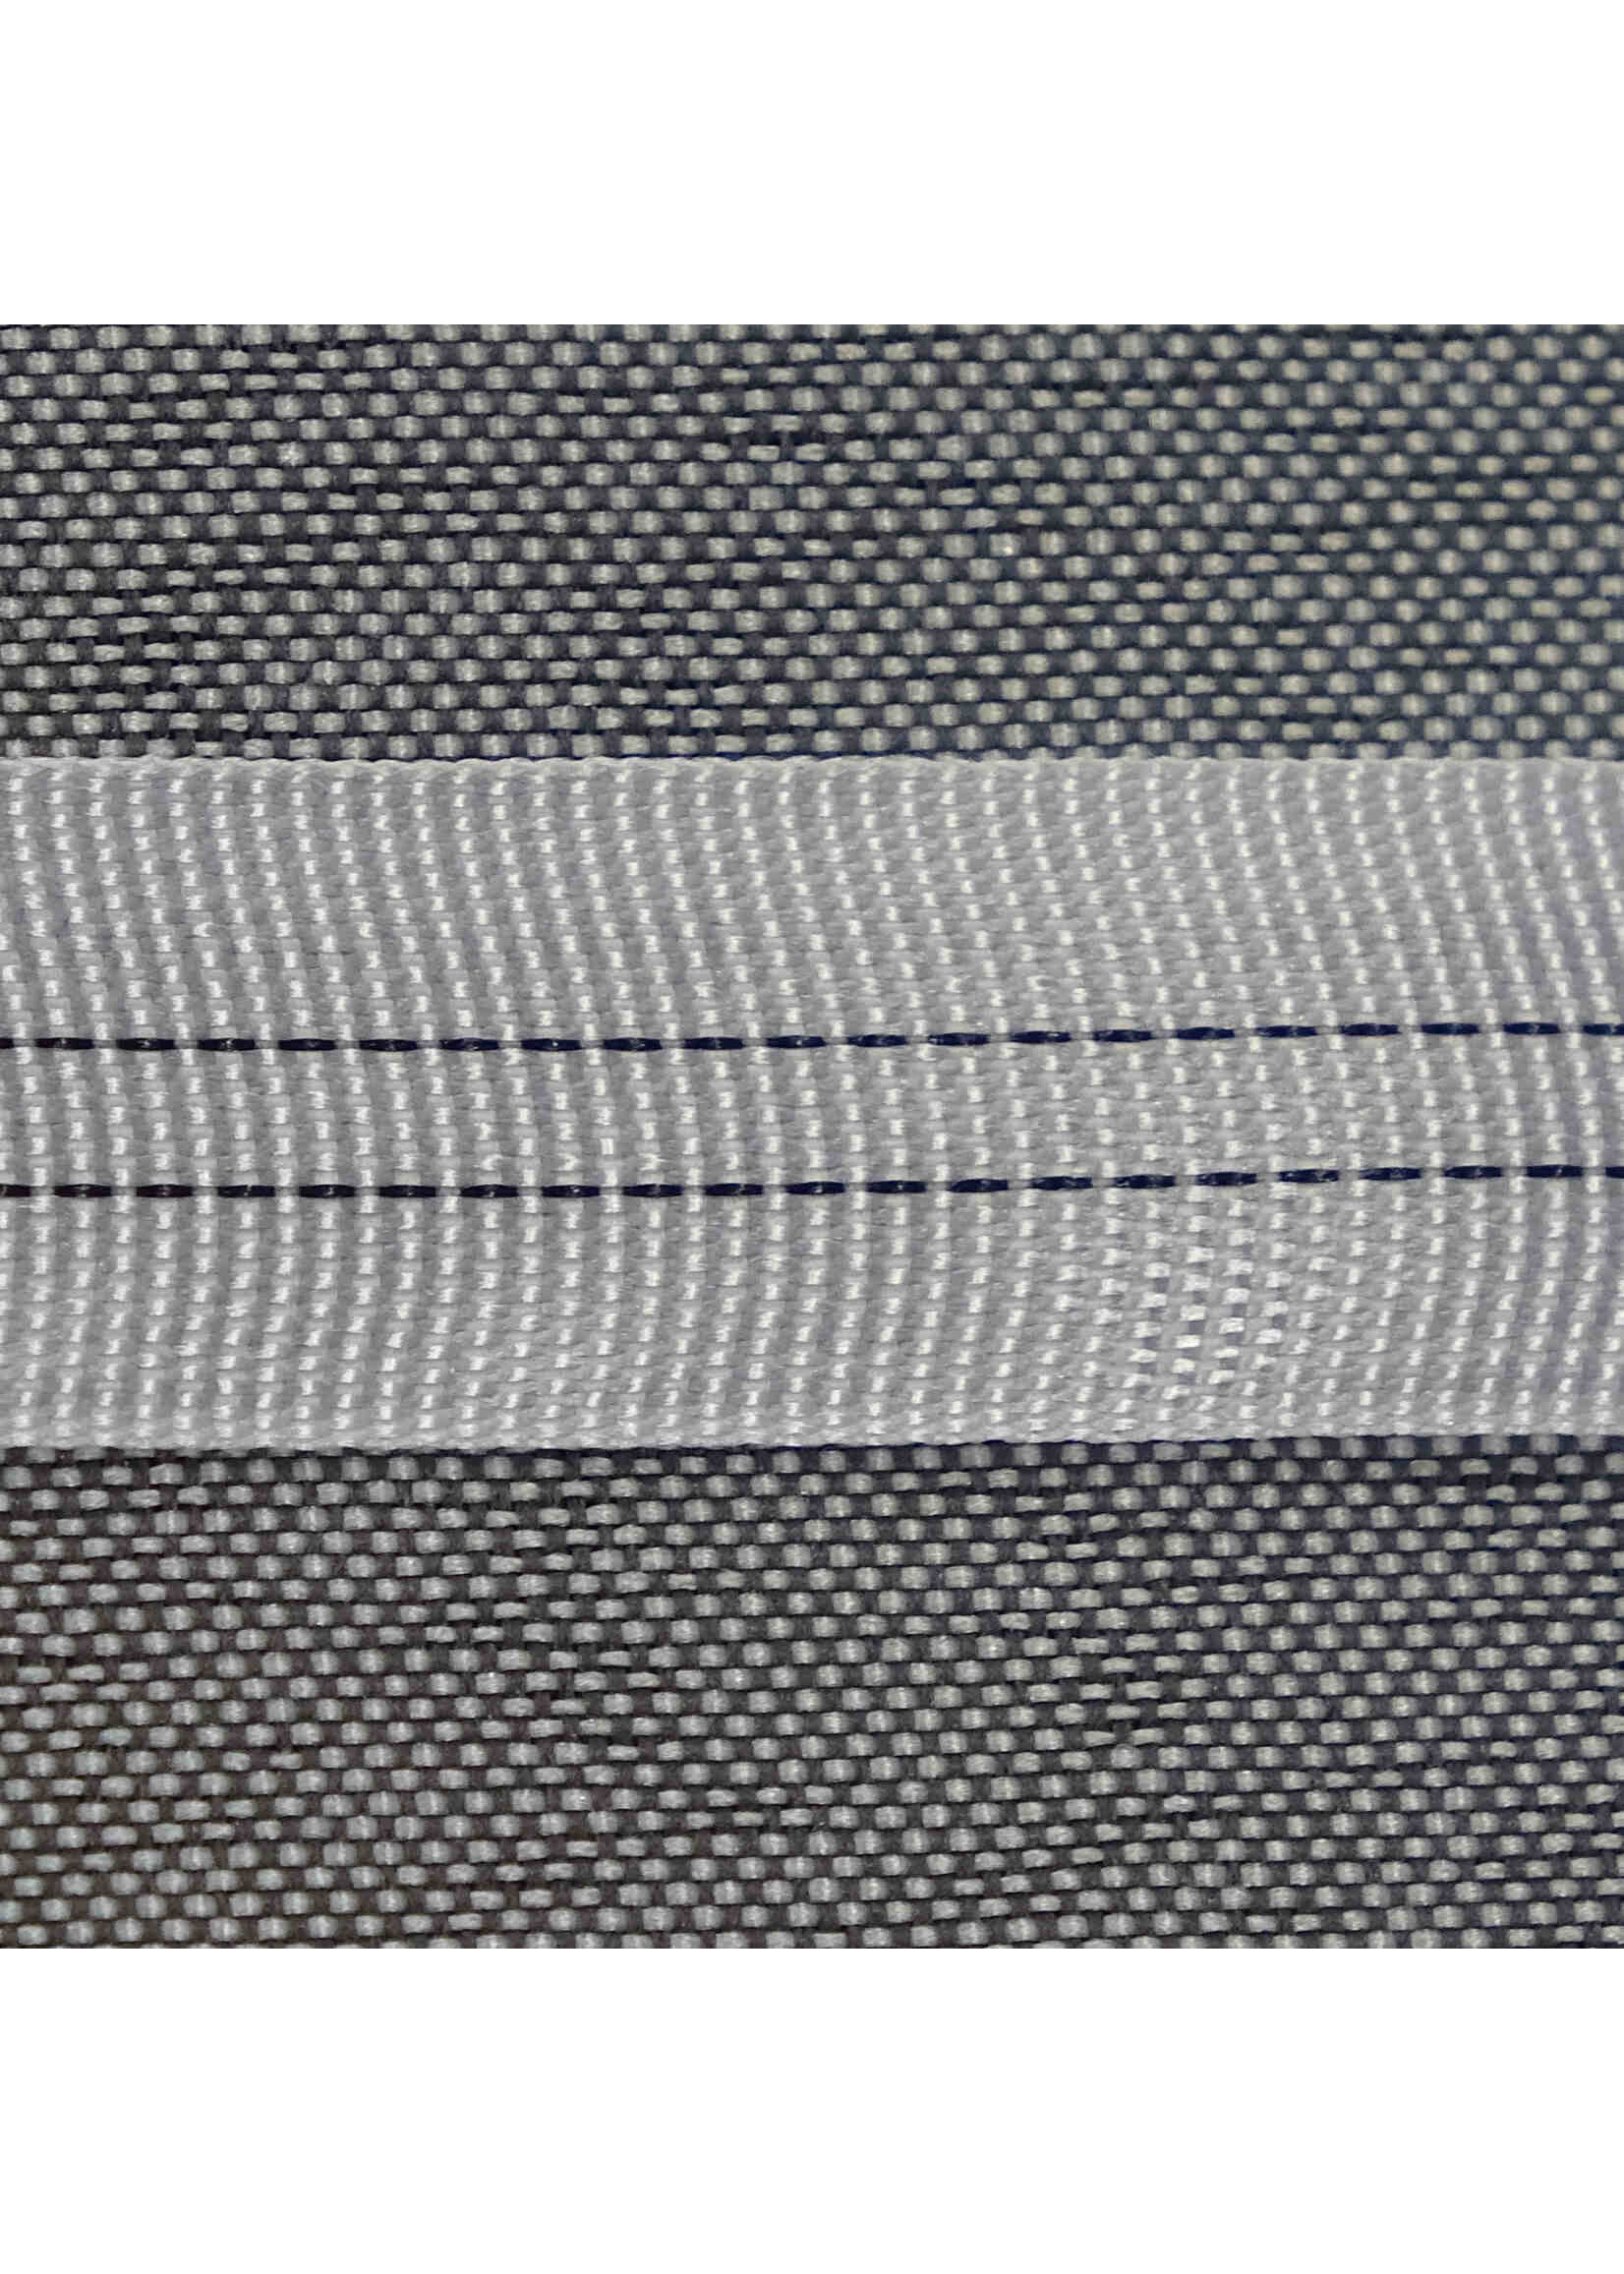 Solana Ruban de calandre en Polyester, résistant à des températures allant jusqu'à 180°C